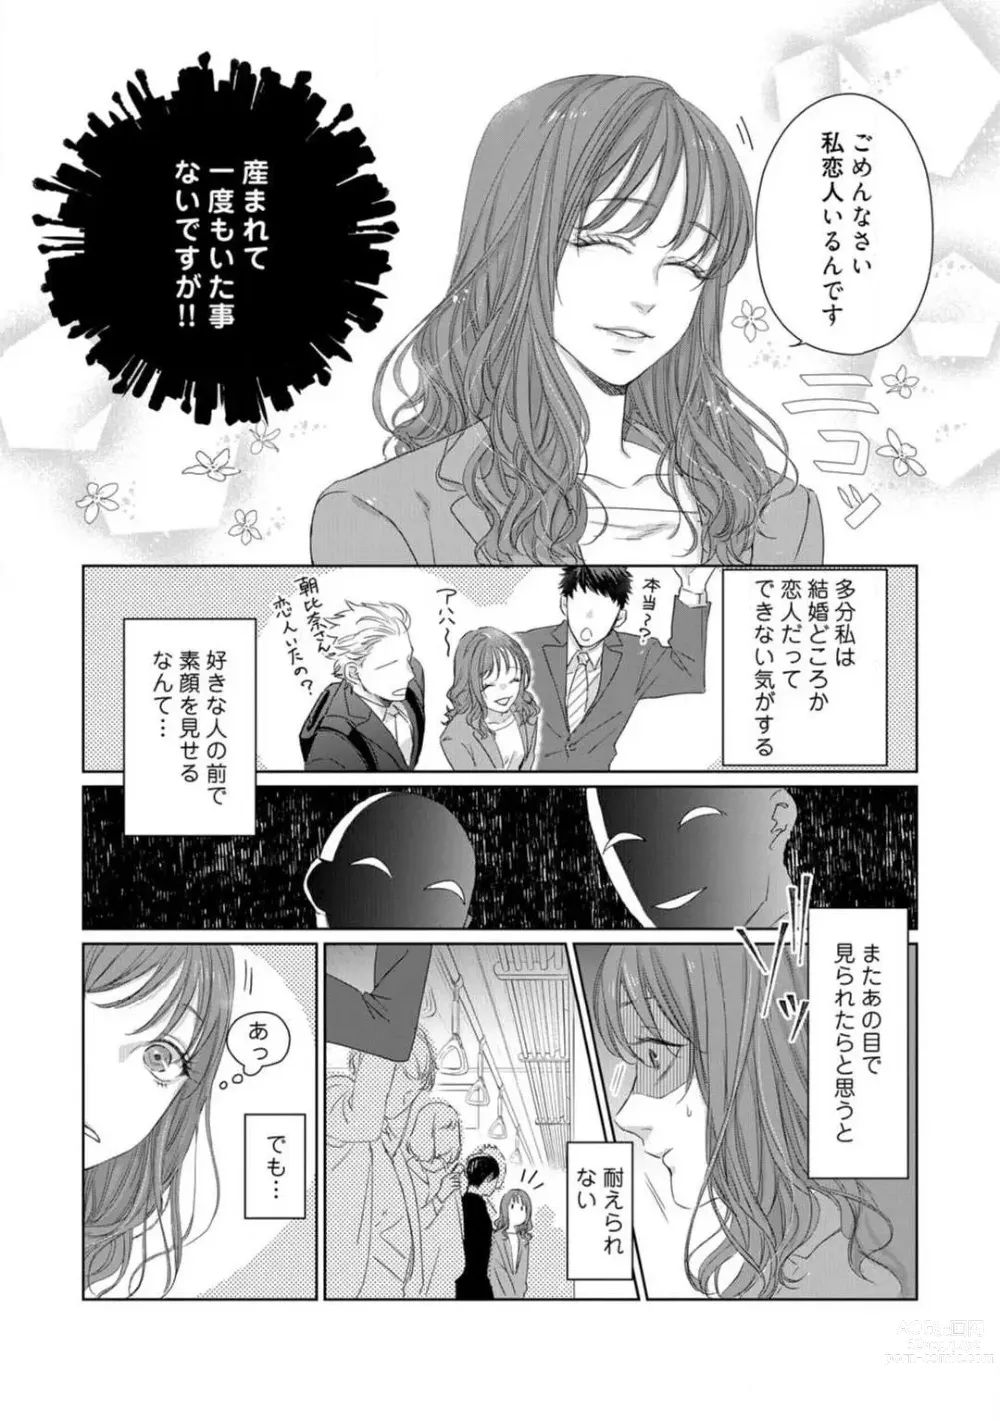 Page 6 of manga Anata no Koisuru Kiraina Watashi~Chp.1-4